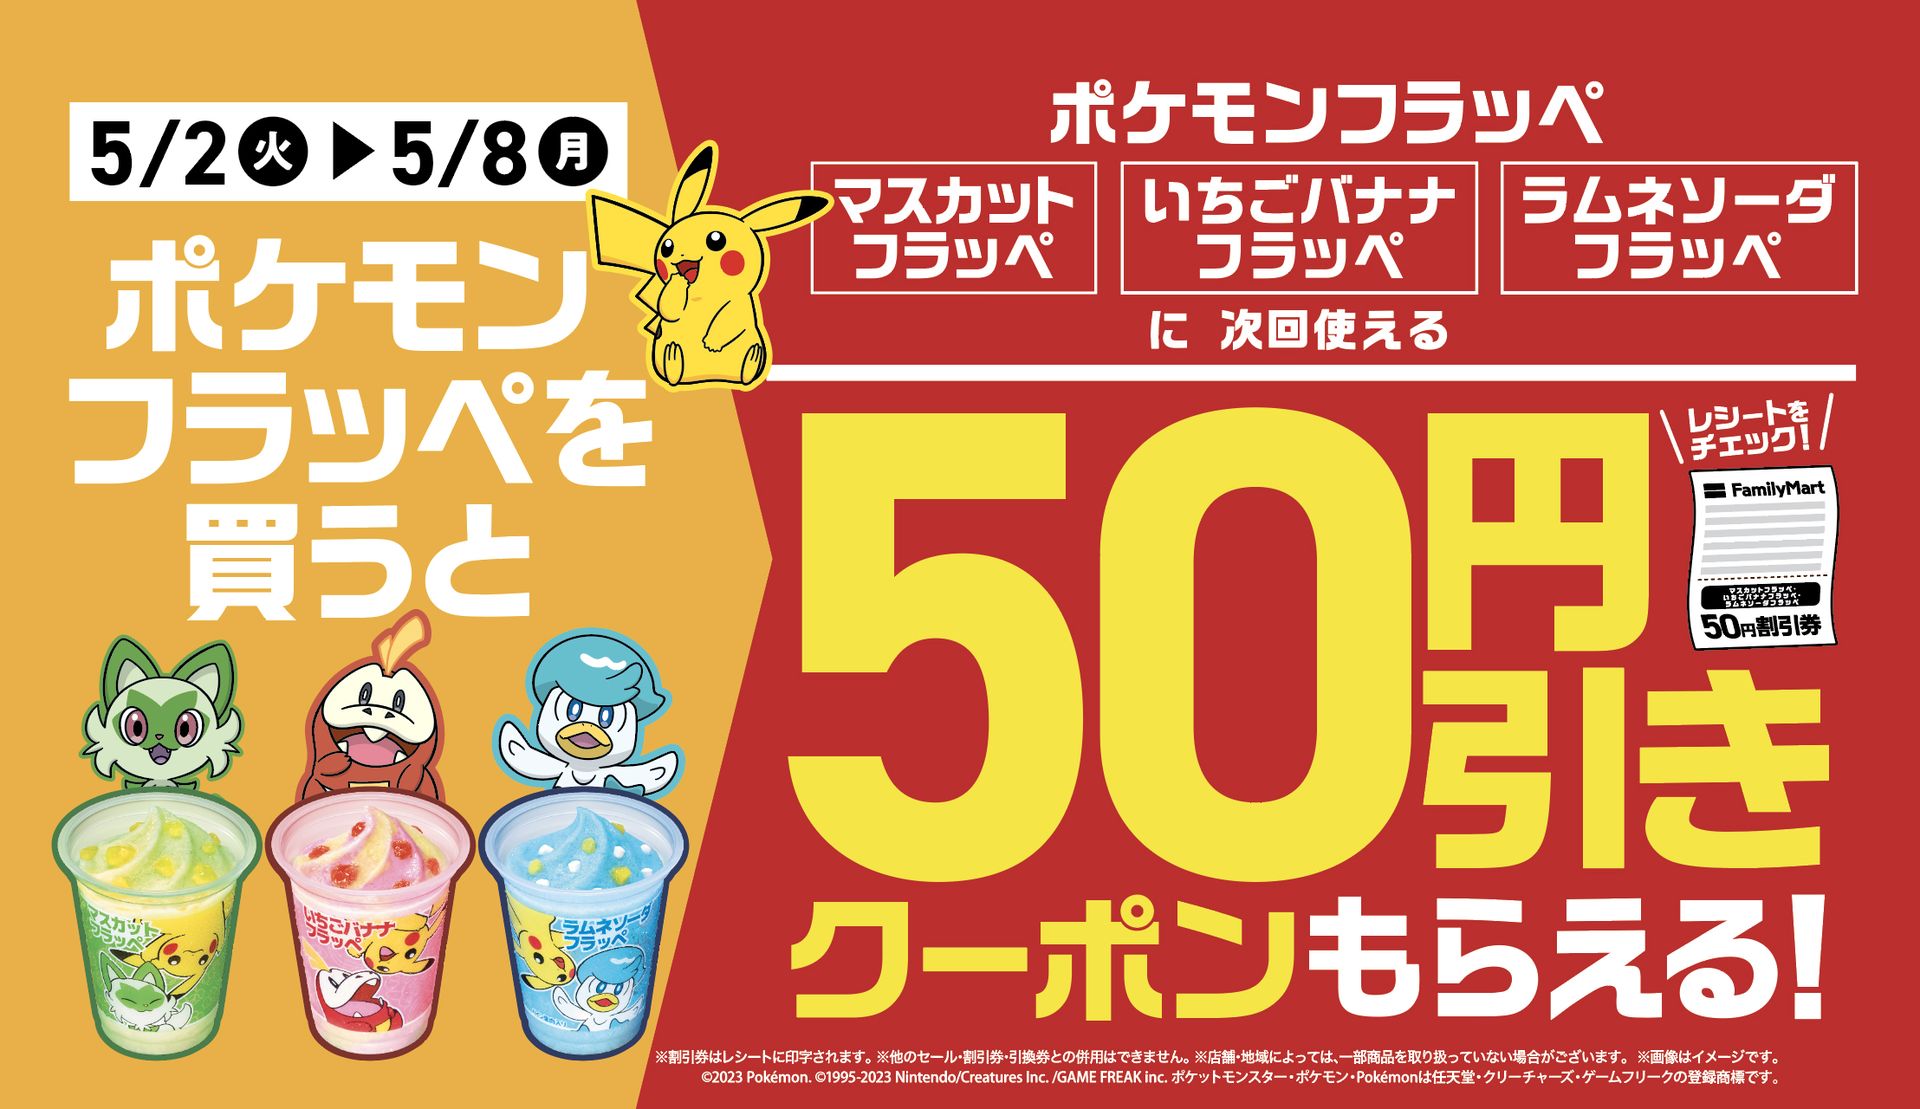 ファミマ、「ポケモン フラッペ」購入で50円引きクーポンがもらえるキャンペーンを5月2日より実施 - GAME Watch